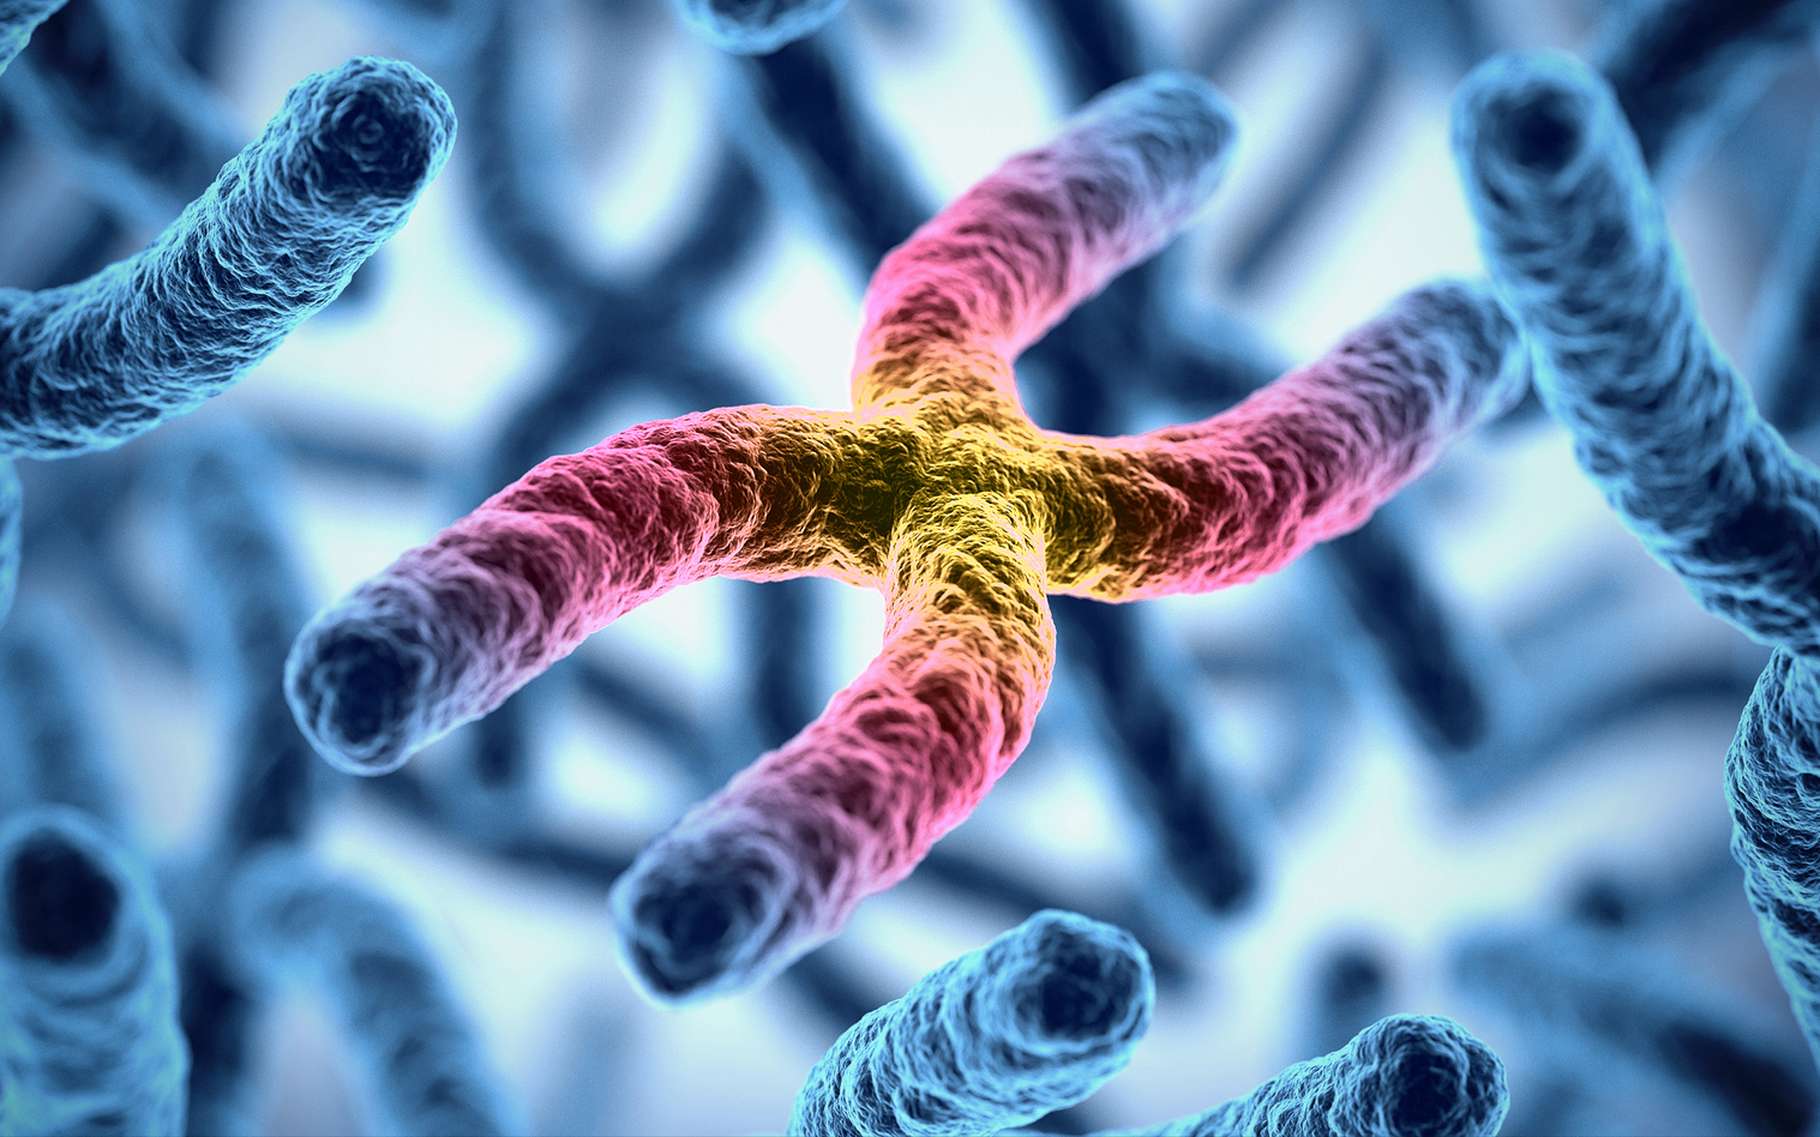 La biologiste Nettie Stevens a joué un grand rôle dans la découverte des chromosomes X et Y. Ici, une illustration 3D de chromosomes. © koya979, Shutterstock